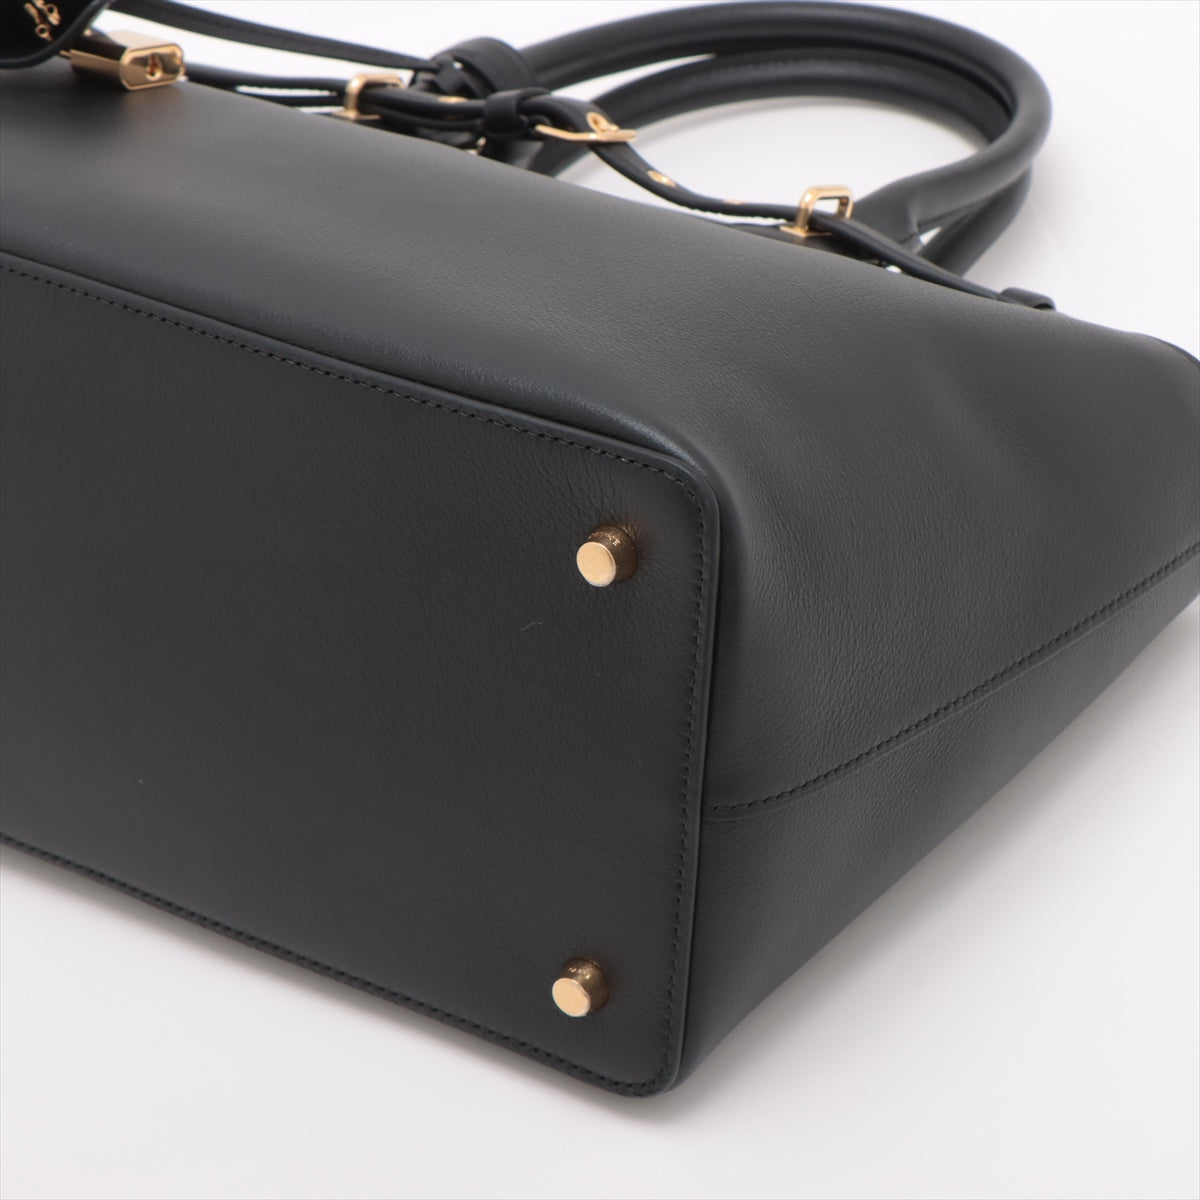 Celine Conti Leather Tote Bag Black